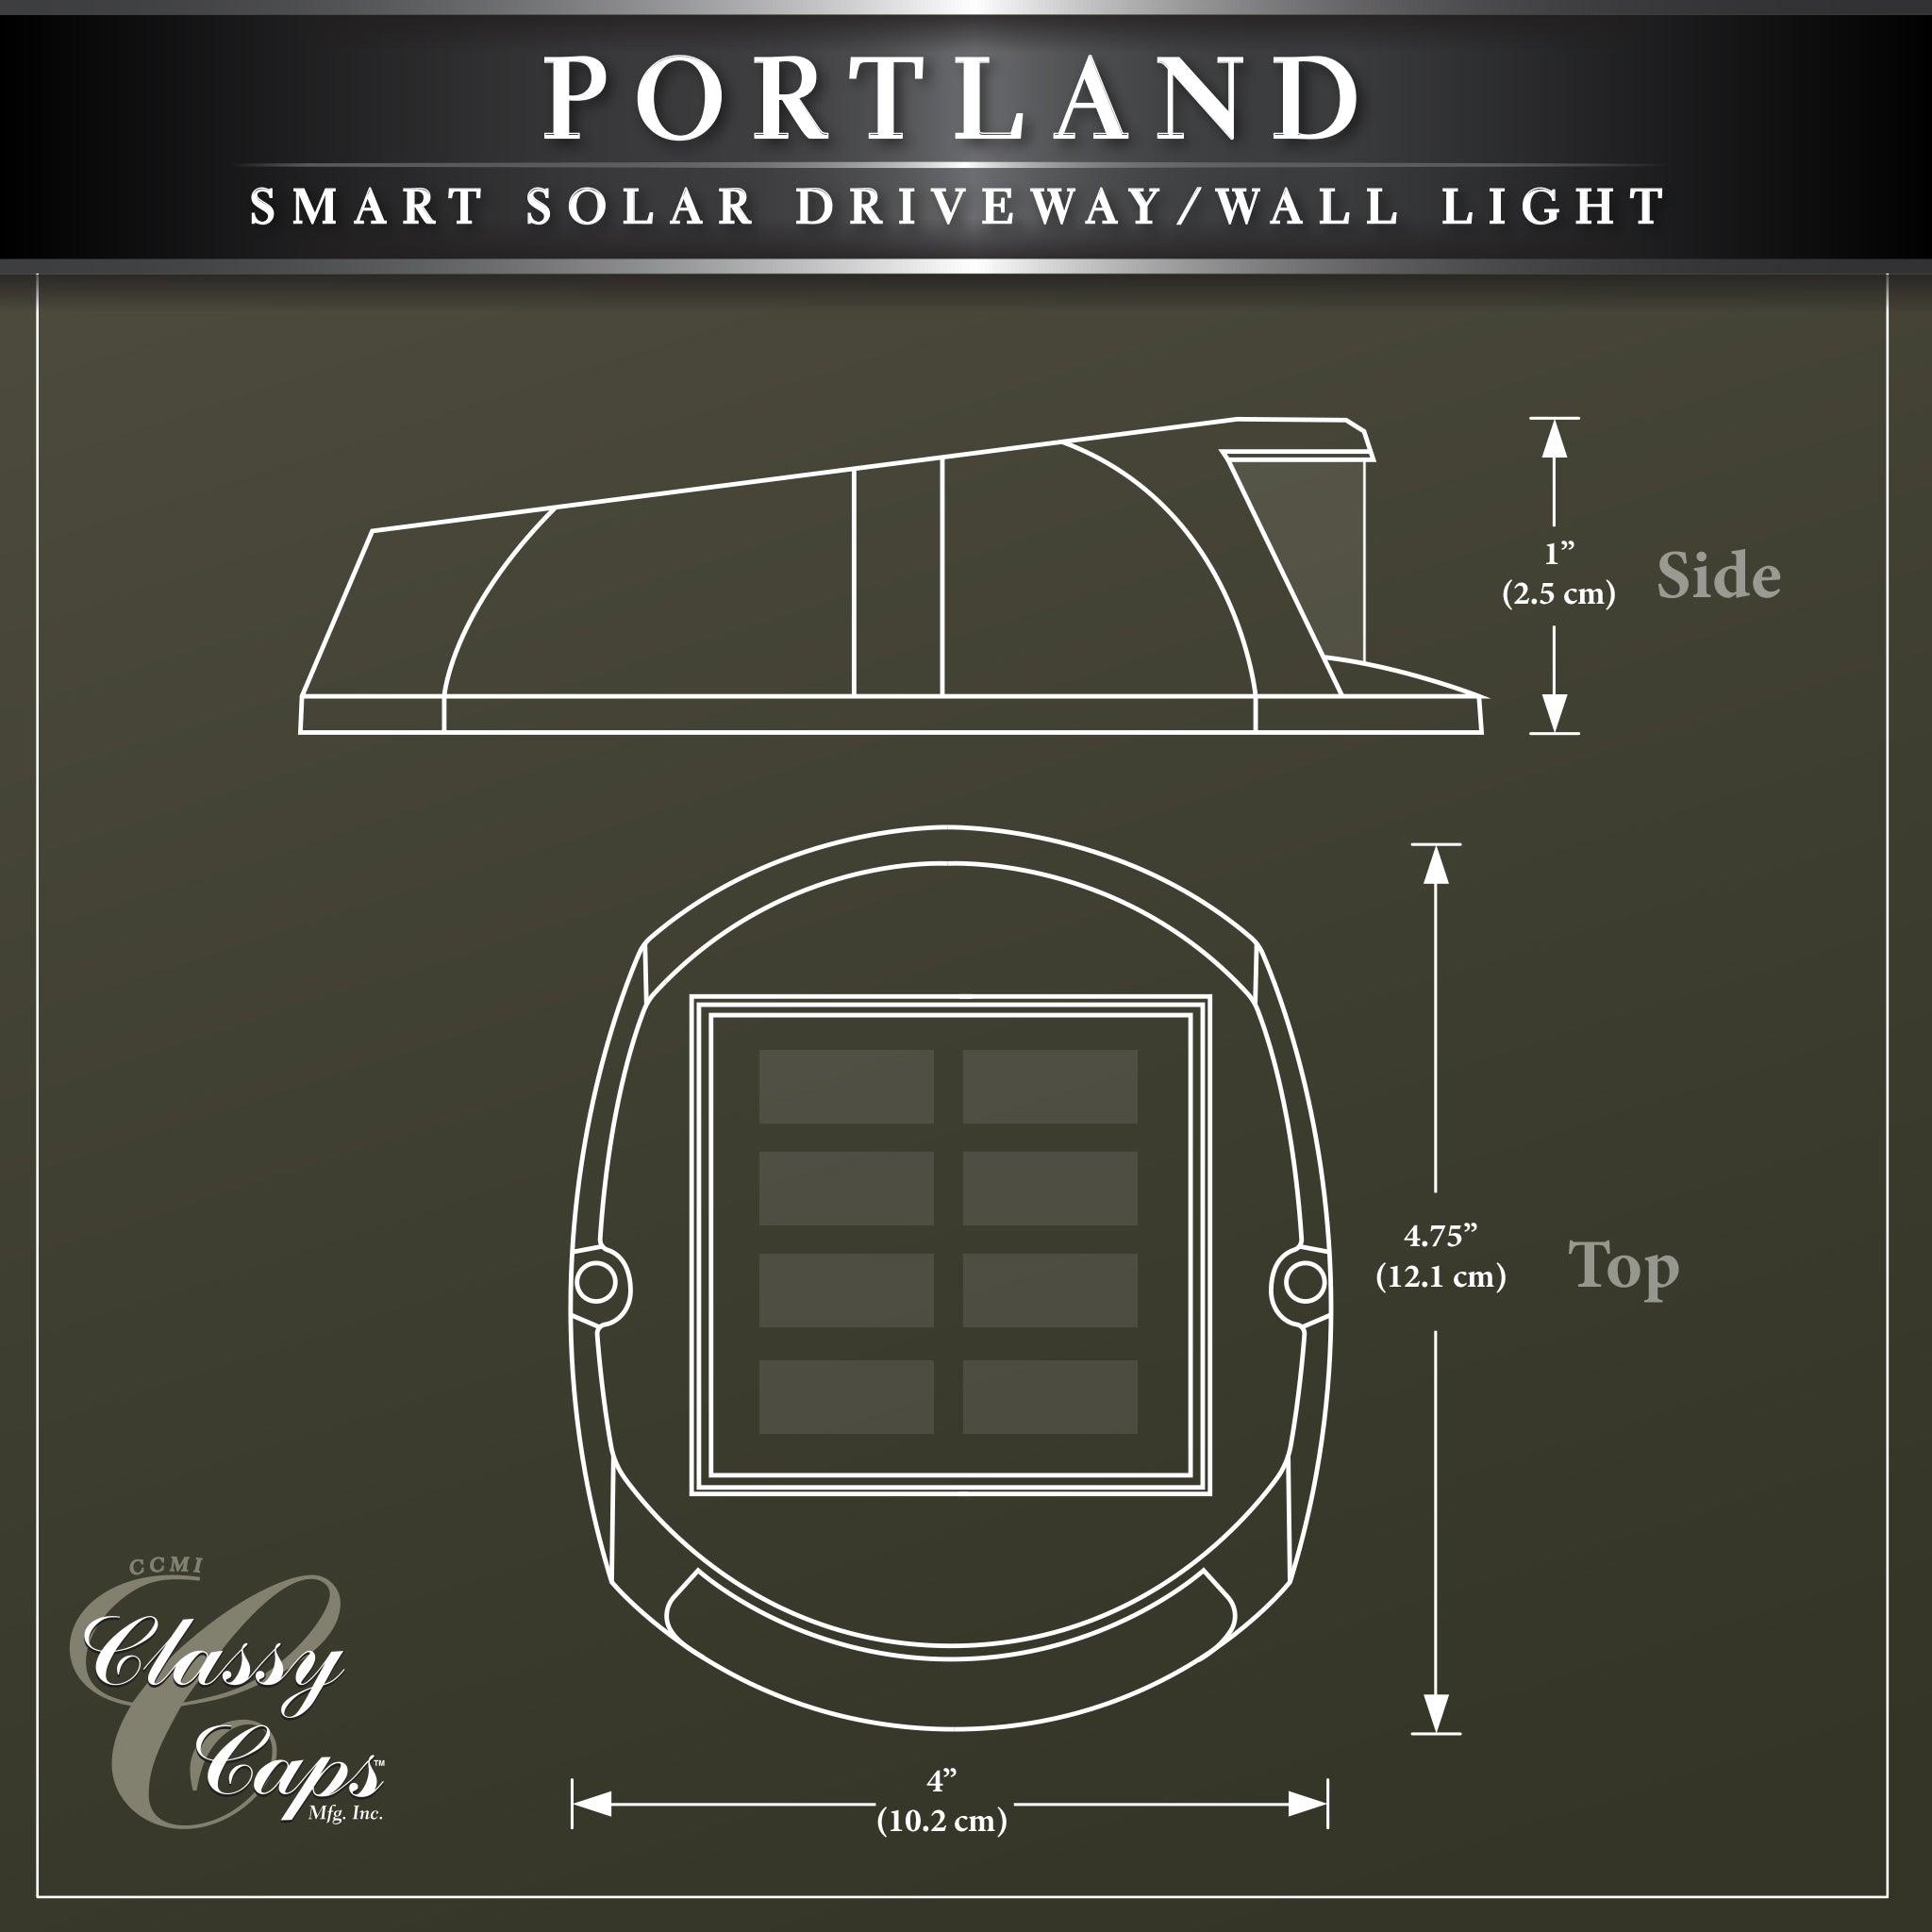 Classy Caps Portland Smart Solar Driveway/Wall Light - Classy Caps Mfg. Inc.